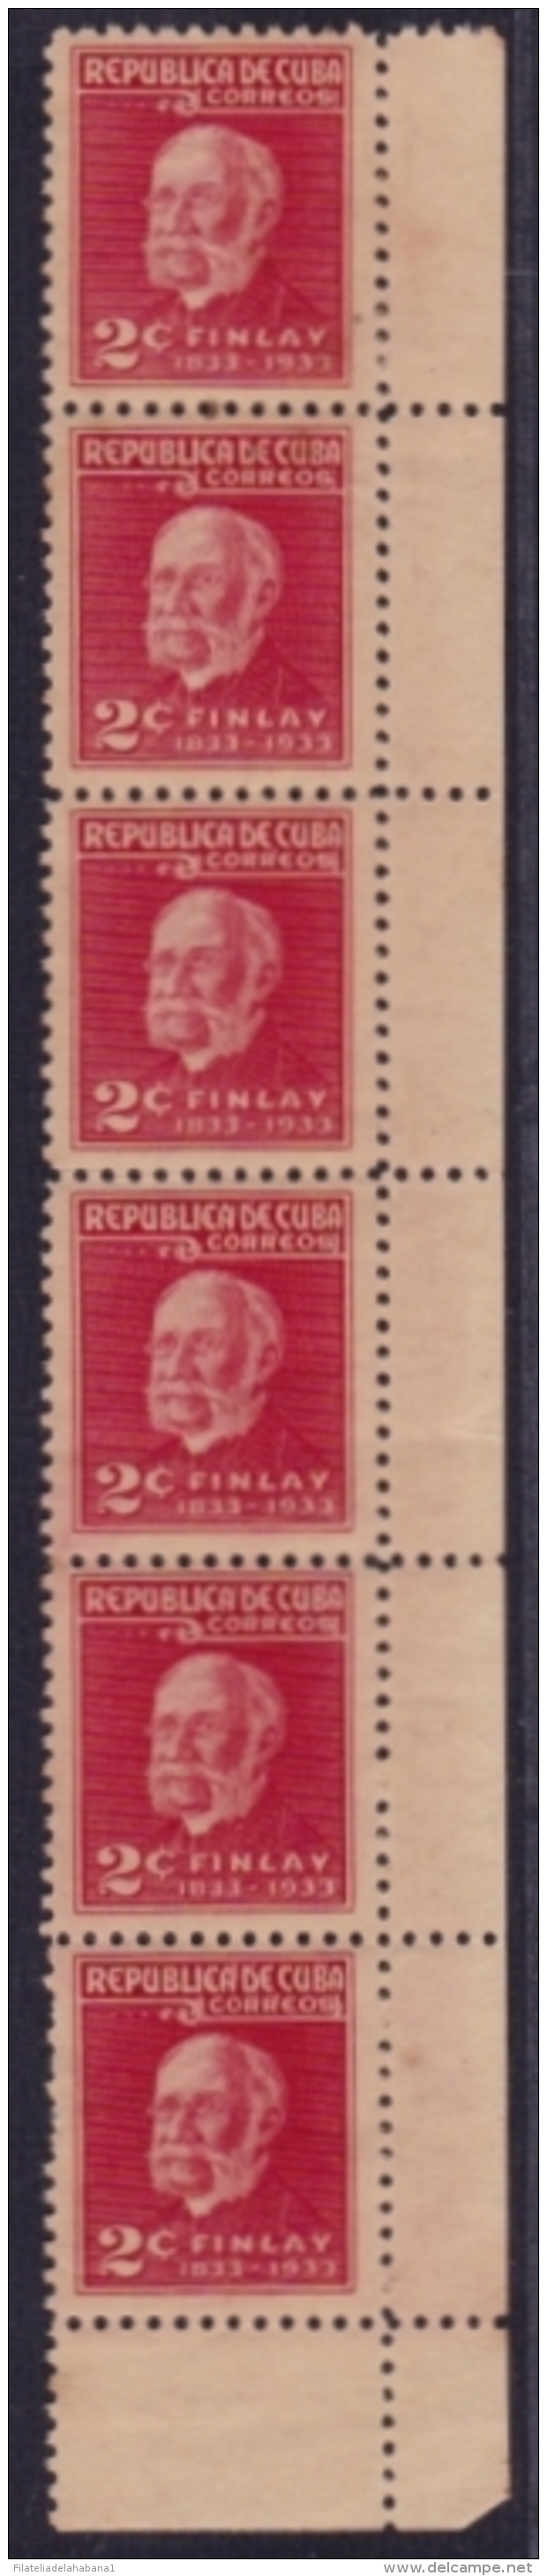 1934-120 CUBA REPUBLICA (LG-1203) 1934 2c CARLOS J. FINLAY ERROR "CORREOSI"  TIRA DE 6.  LIGERAS MANCHAS. - Nuevos